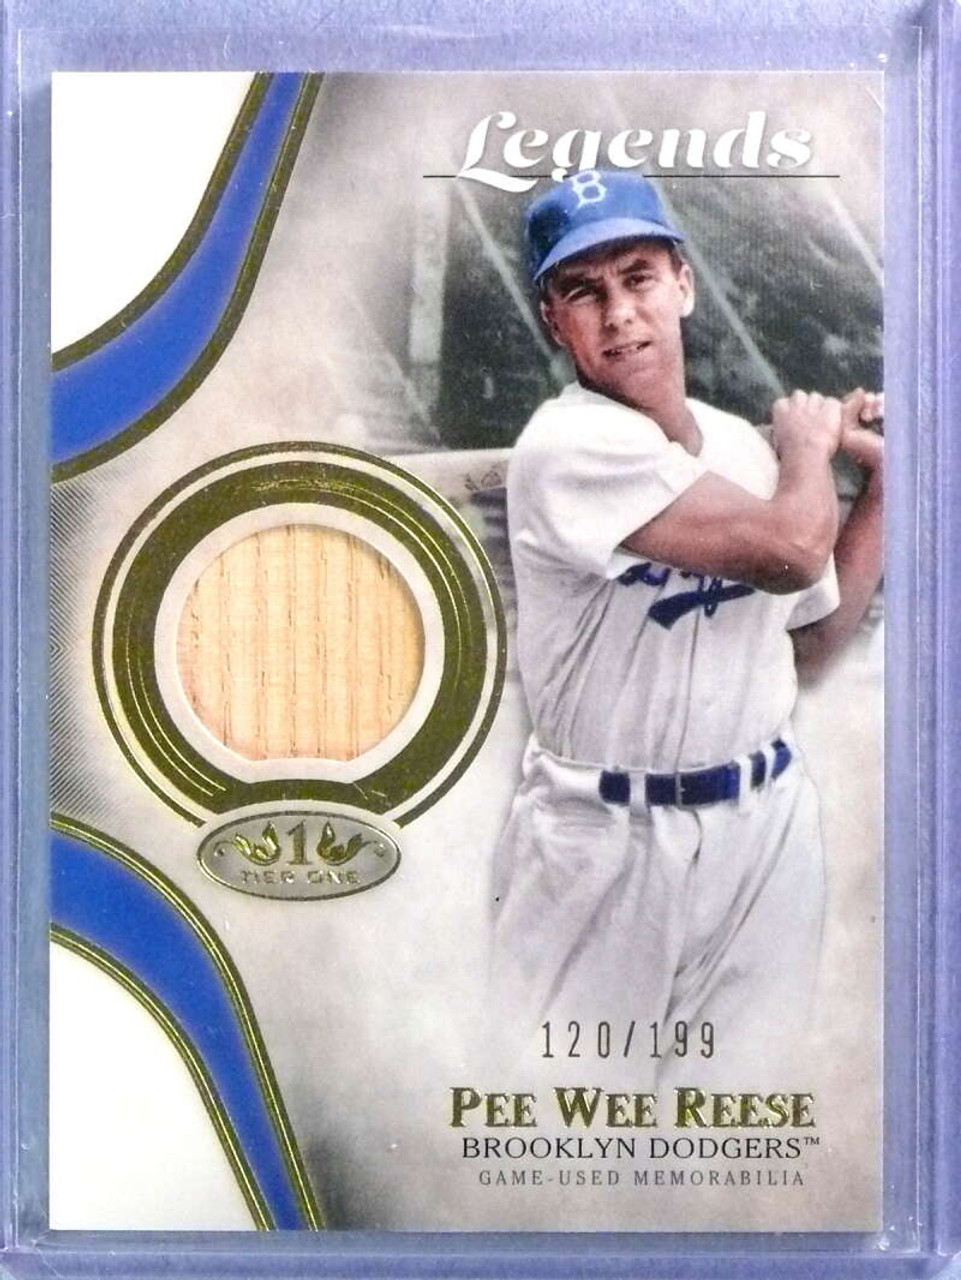 pee wee reese card